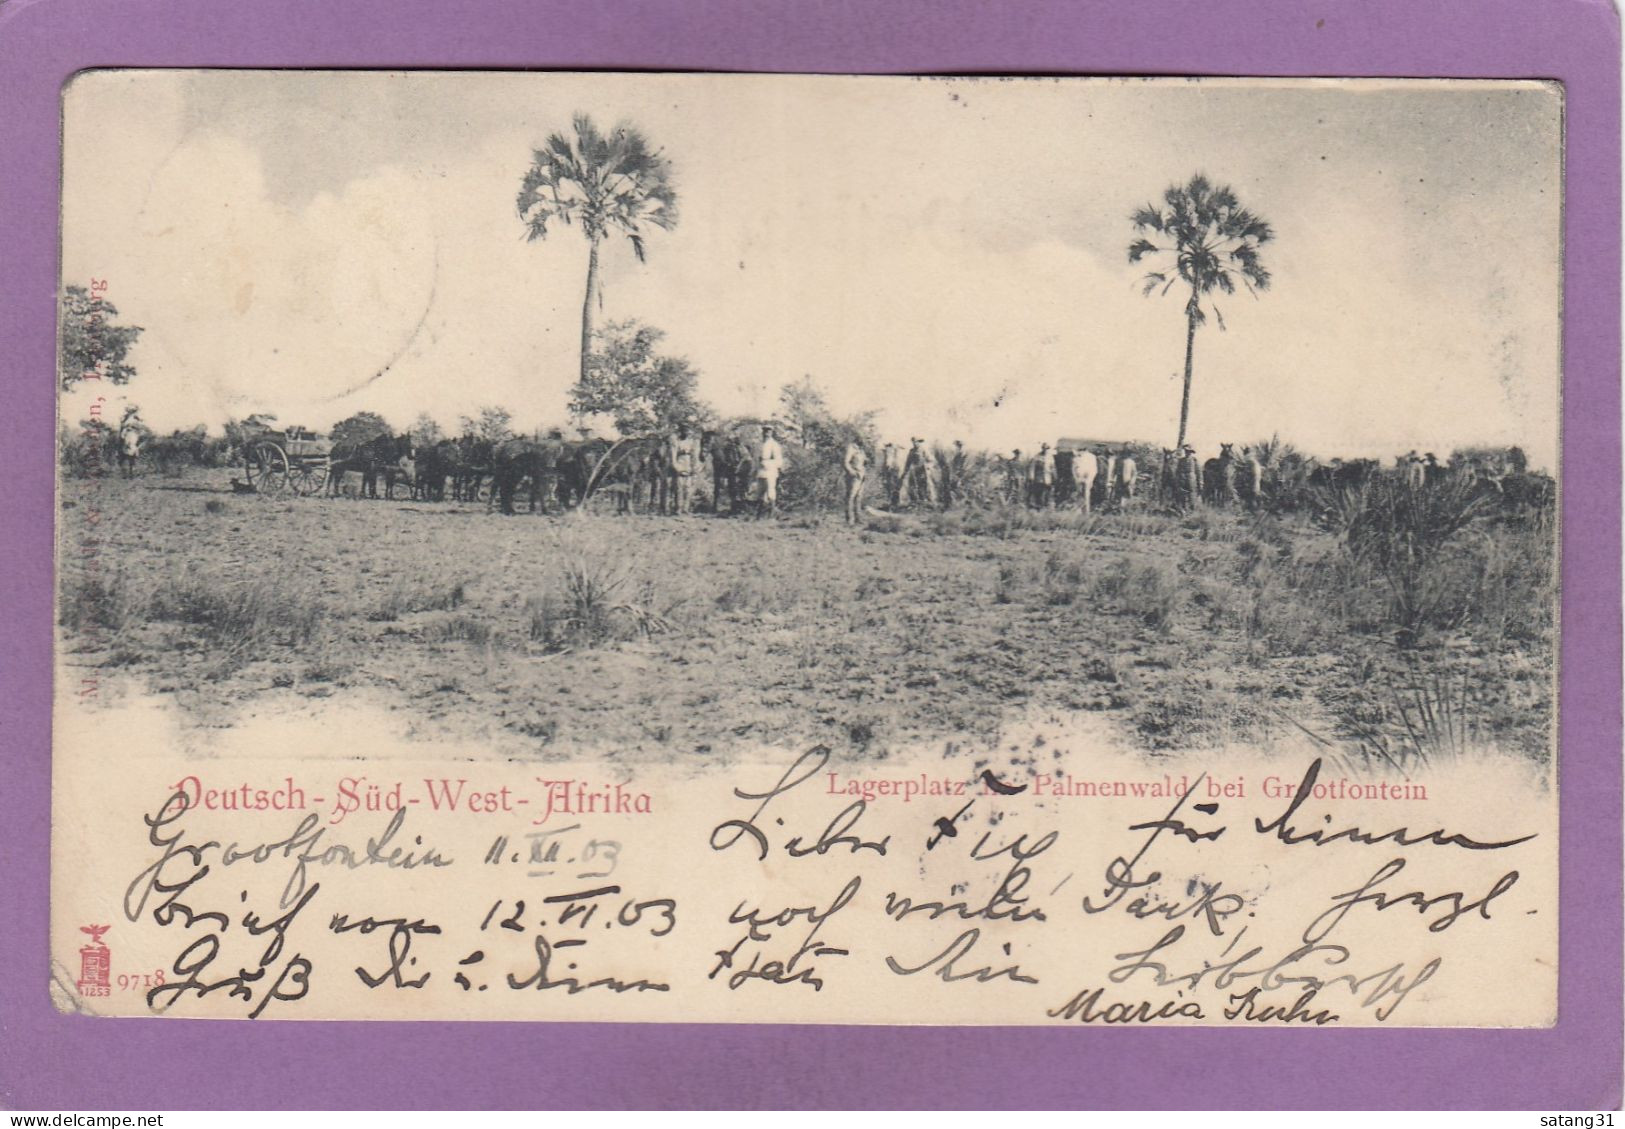 GRUSS AUS SÜDWEST-AFRIKA,LAGERPLATZ IM PALMENWALD BEI GROOTFONTEIN,UM 1904. - Namibie